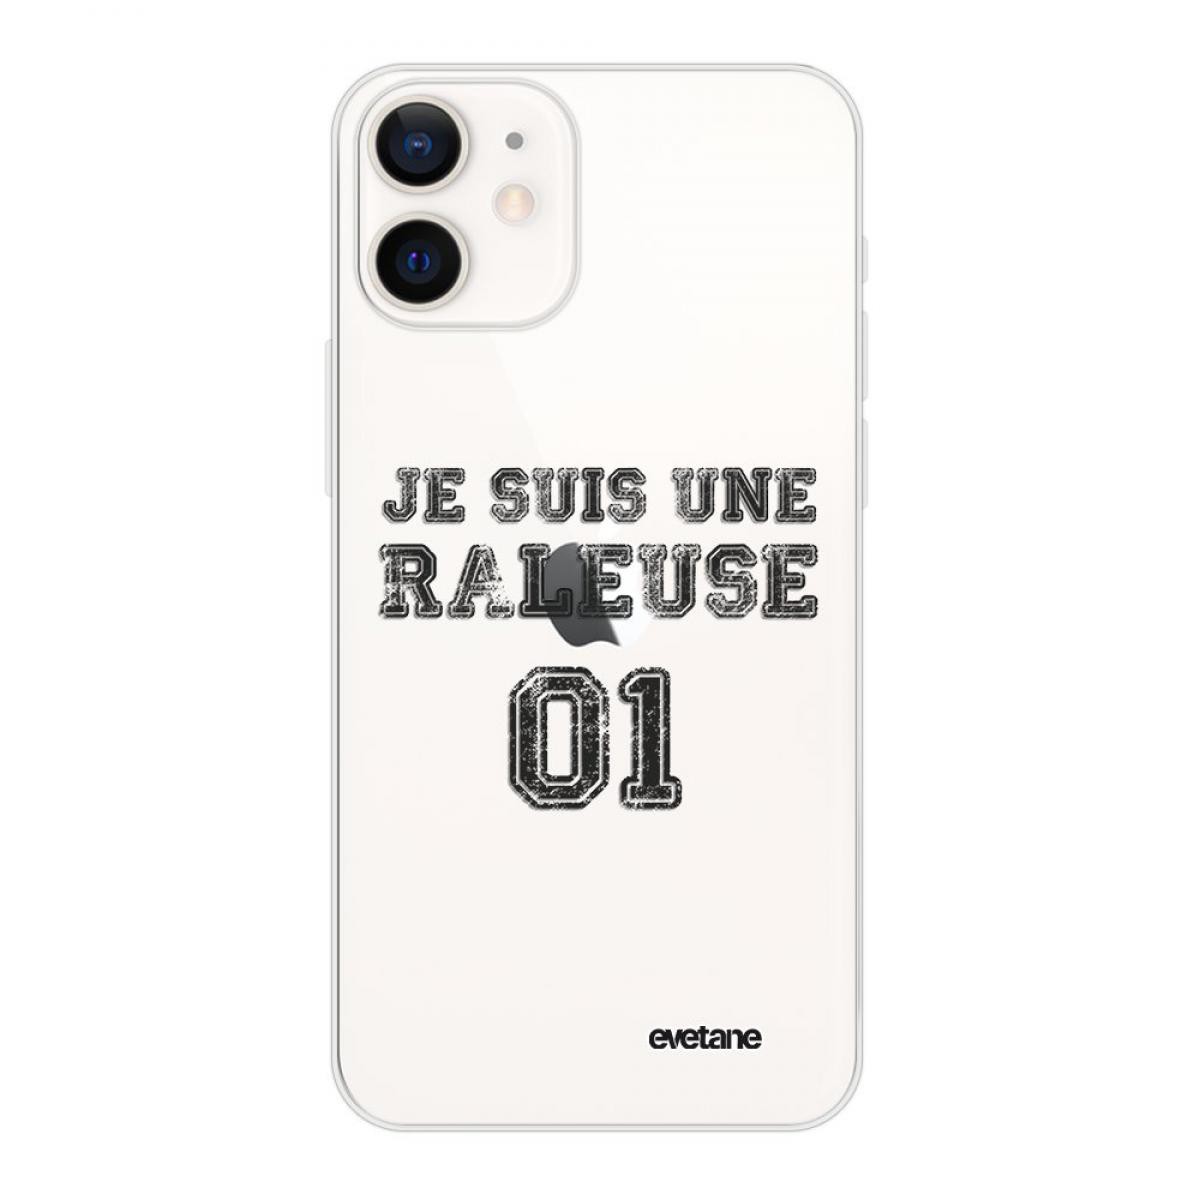 Evetane - Coque iPhone 12 mini souple transparente Râleuse Motif Ecriture Tendance Evetane - Coque, étui smartphone